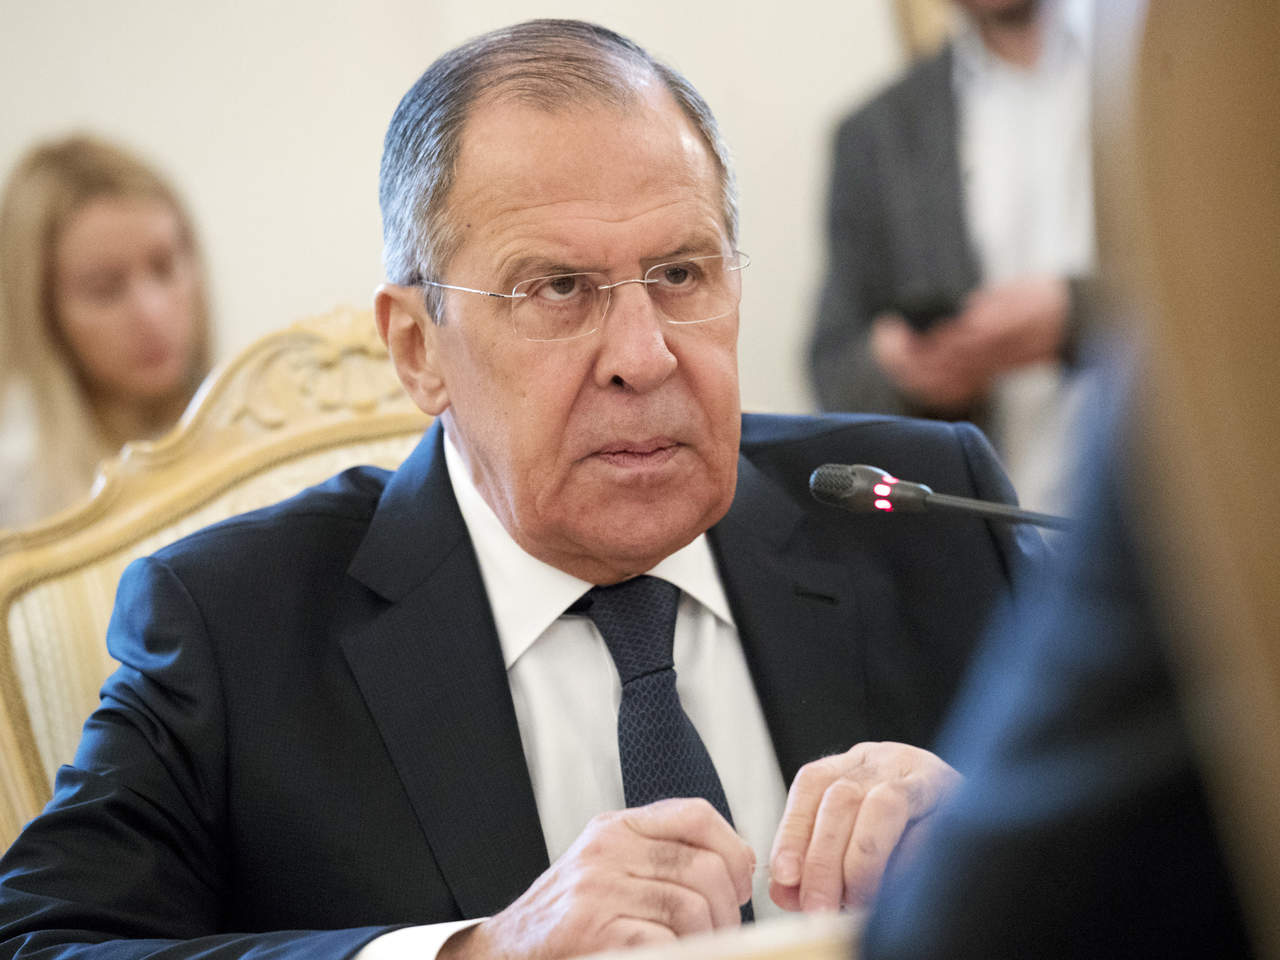 Rusia hará el anuncio “próximamente”, dijo Lavrov sin entrar en detalles sobre la fecha o el número de diplomáticos británicos que se verán afectados. (ARCHIVO)